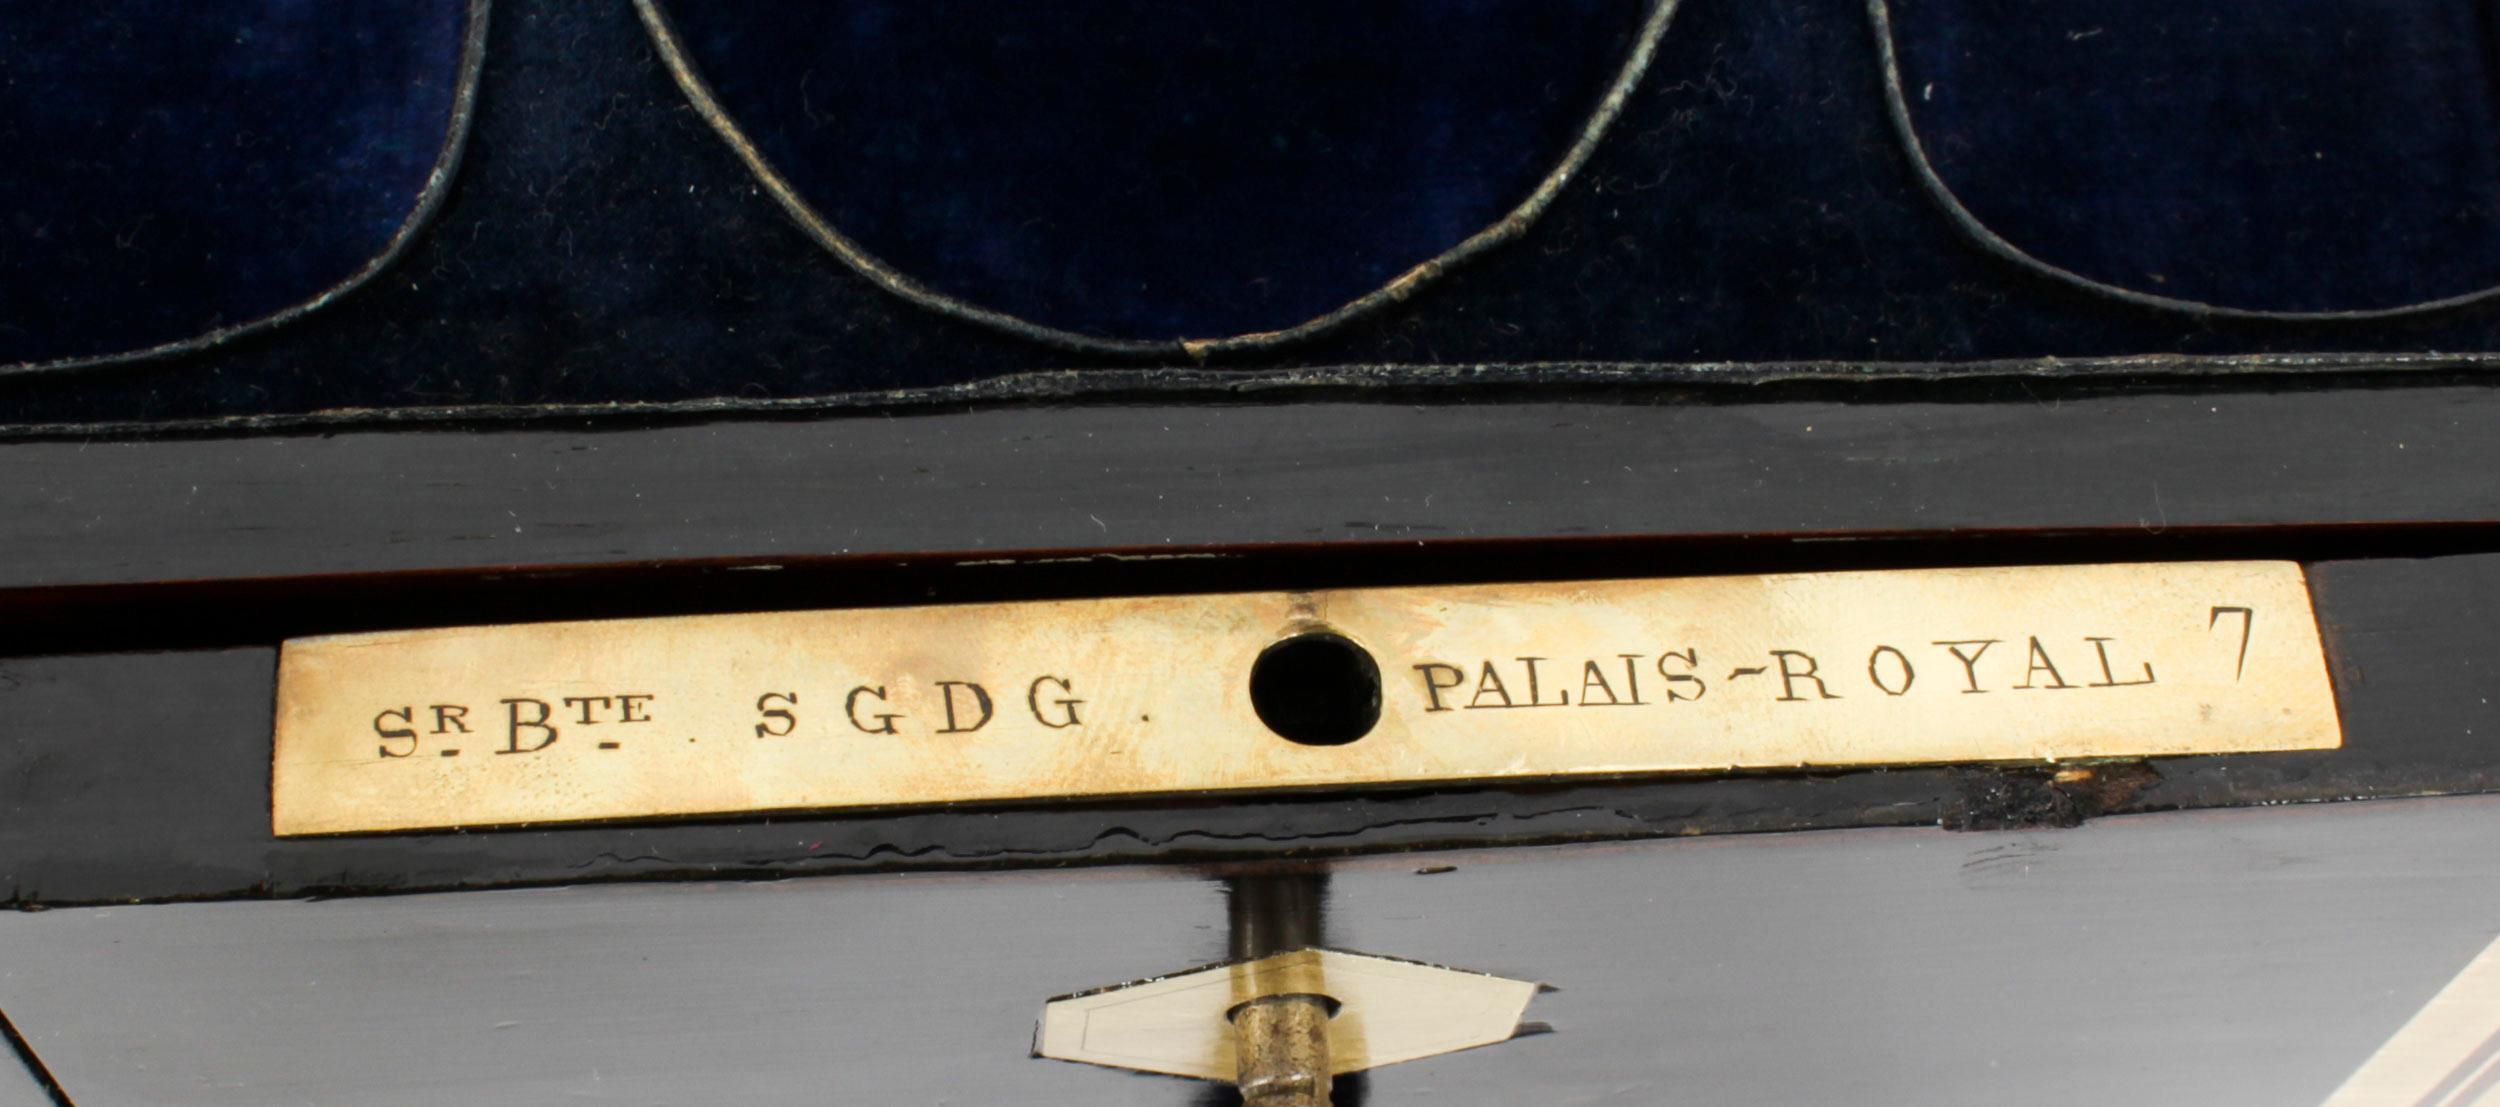 Antique Palais Royal French Casket Necessaire Vanity Chest by L. Dujat 19th C For Sale 6